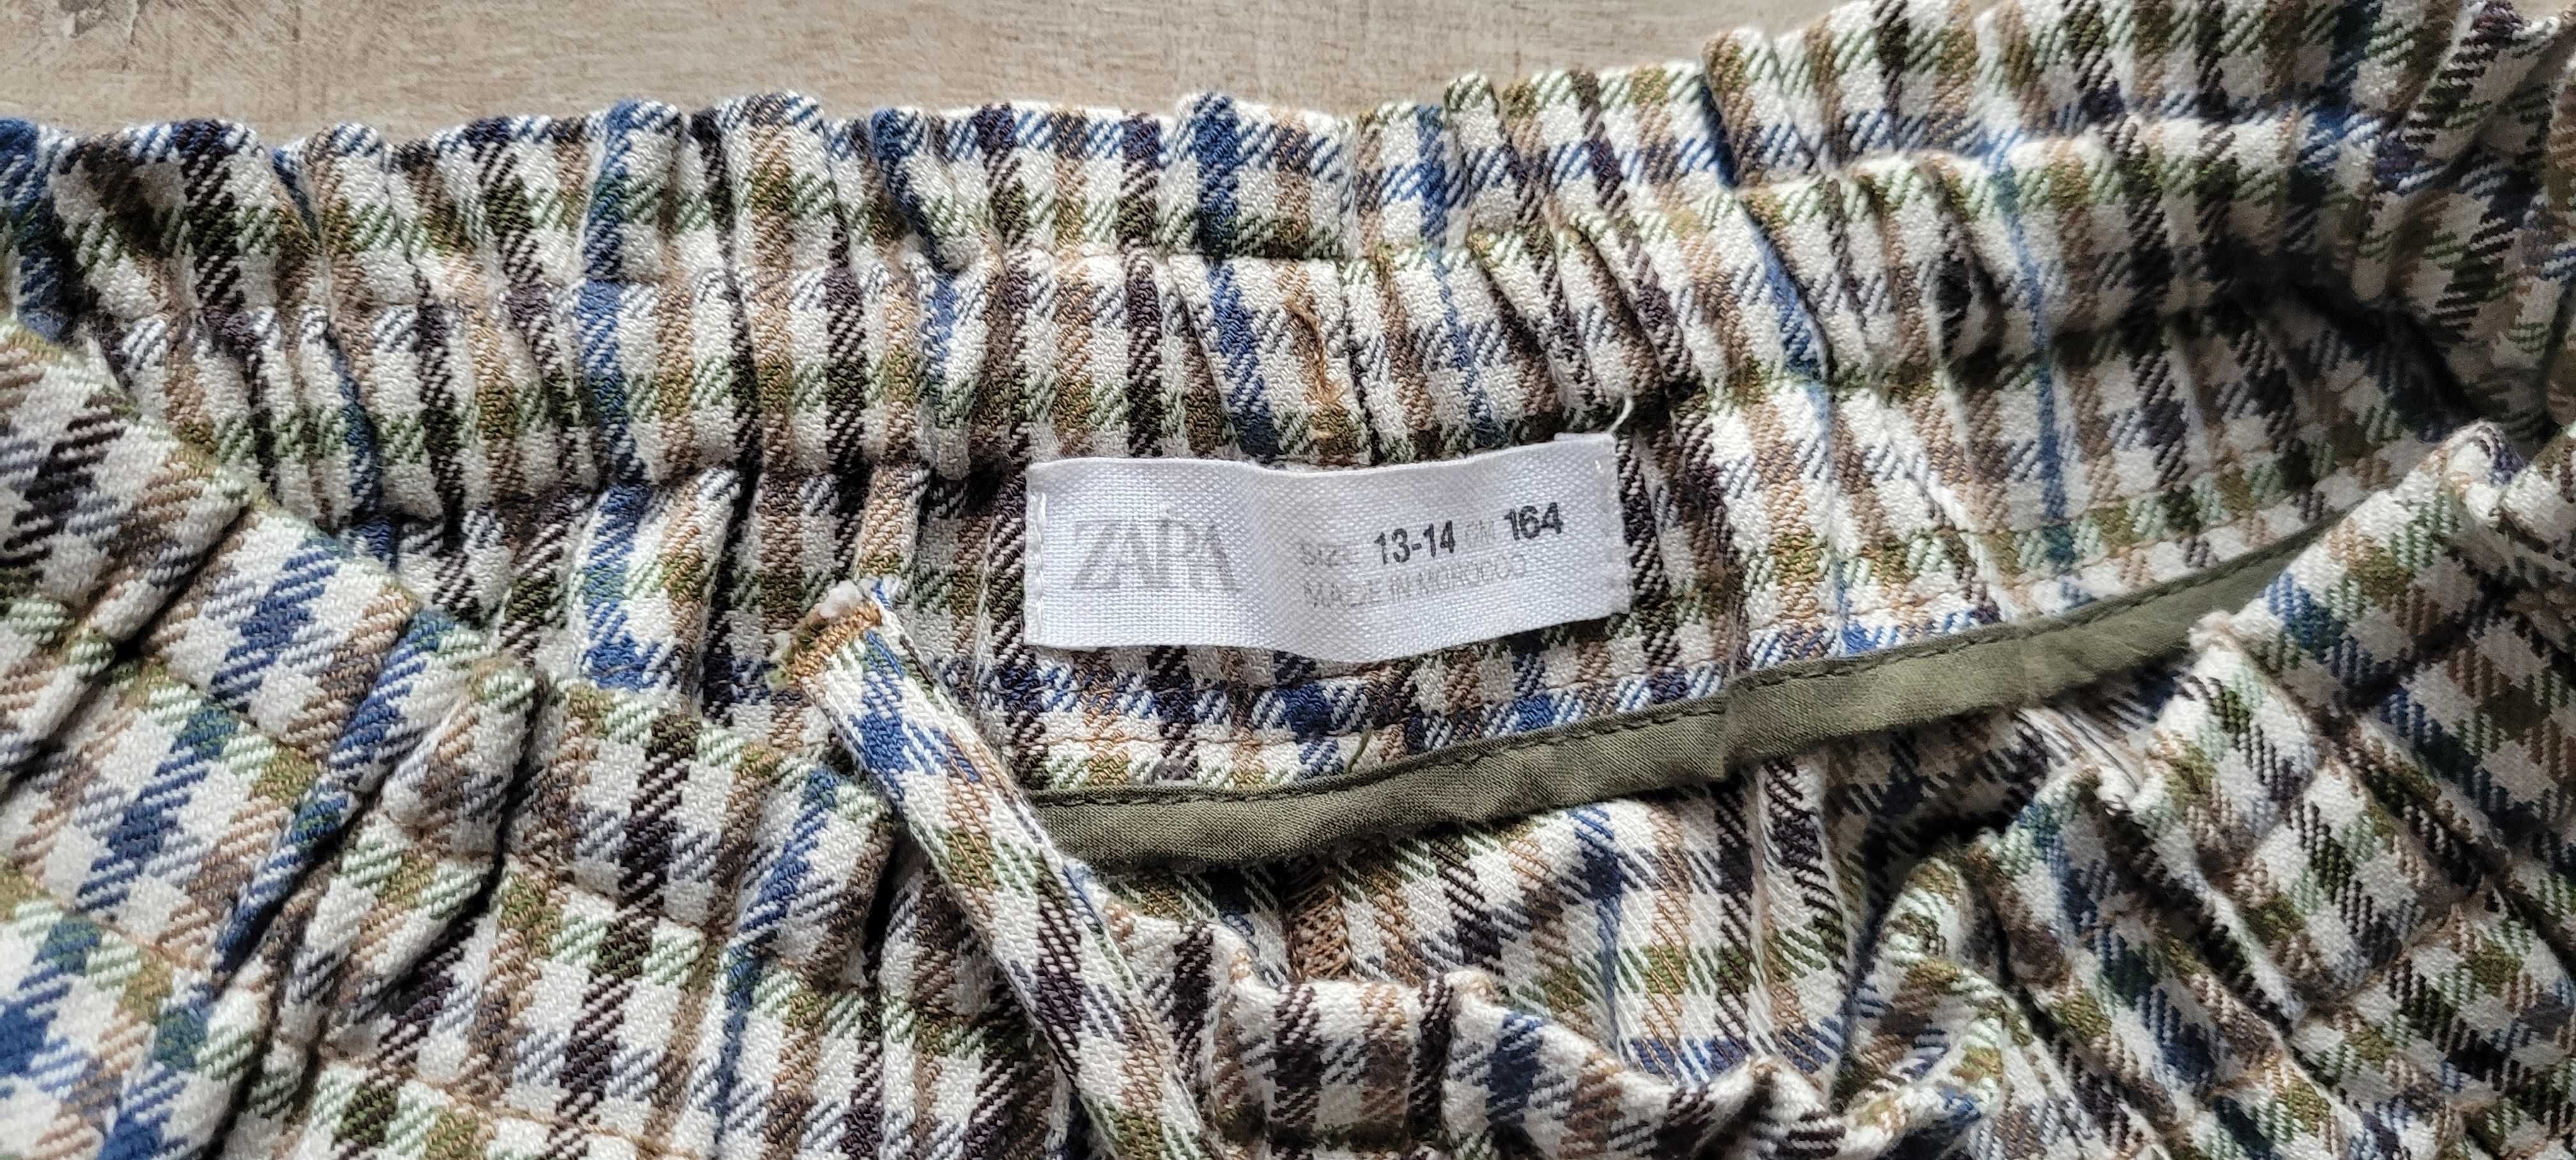 Spodnie z materiału w kratę Zara rozmiar 164